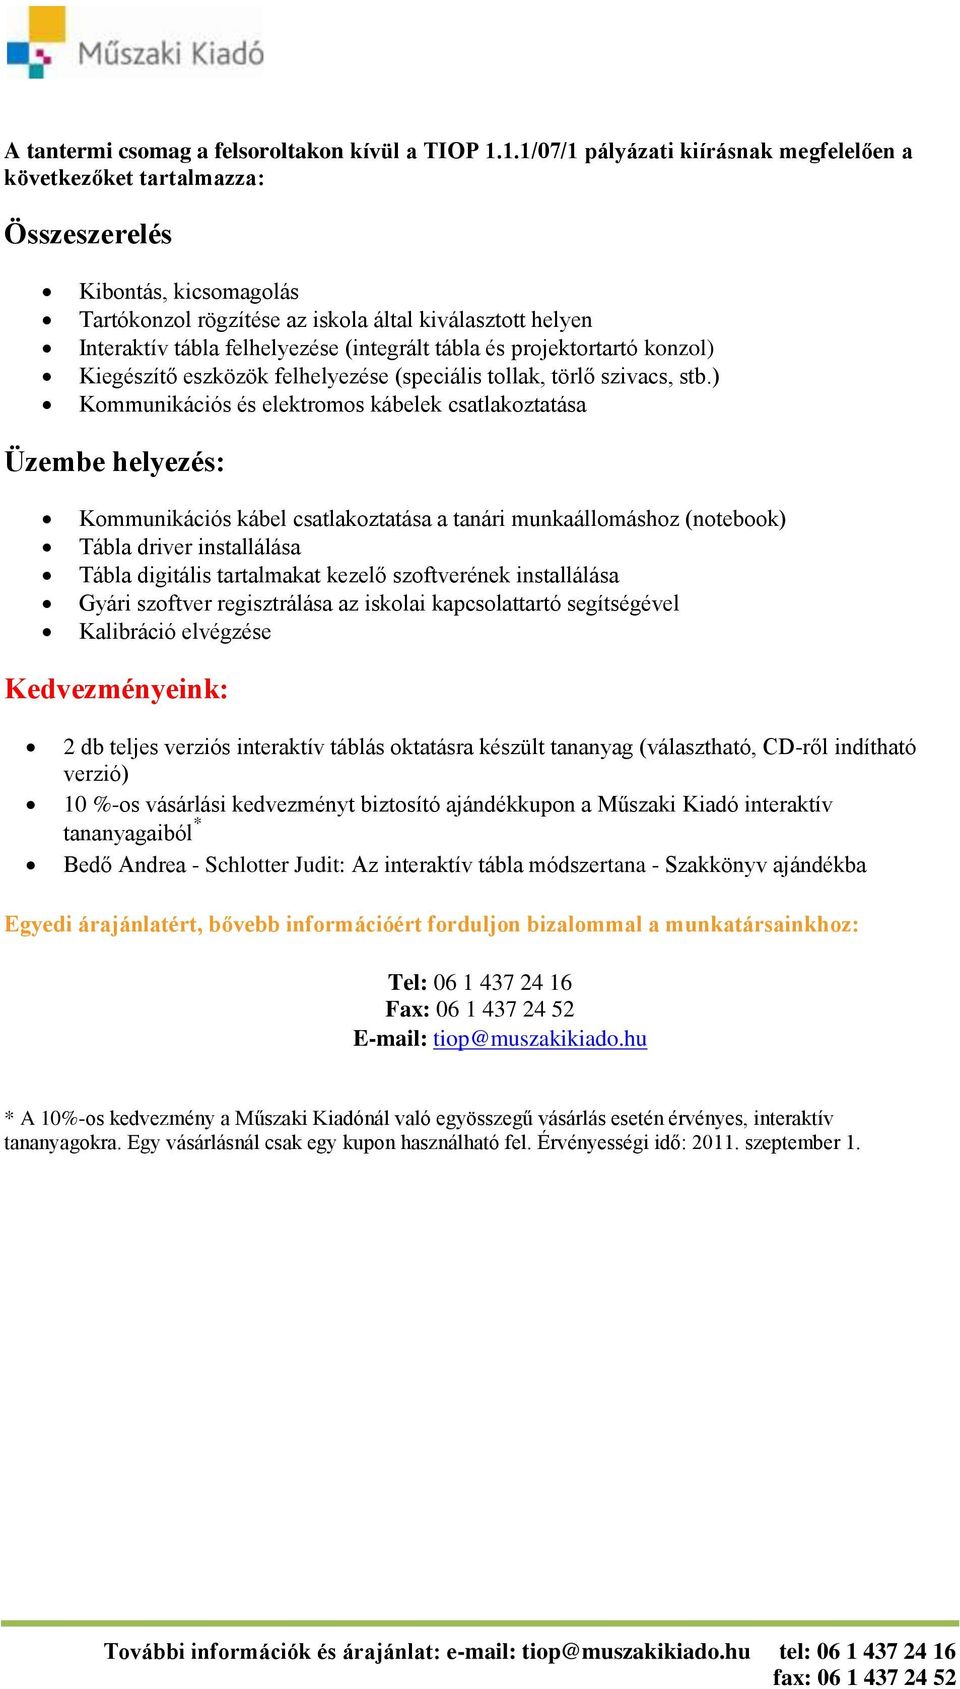 Műszaki Kiadó kínálata a TIOP 1.1.1/07/1-es pályázathoz - PDF Ingyenes  letöltés